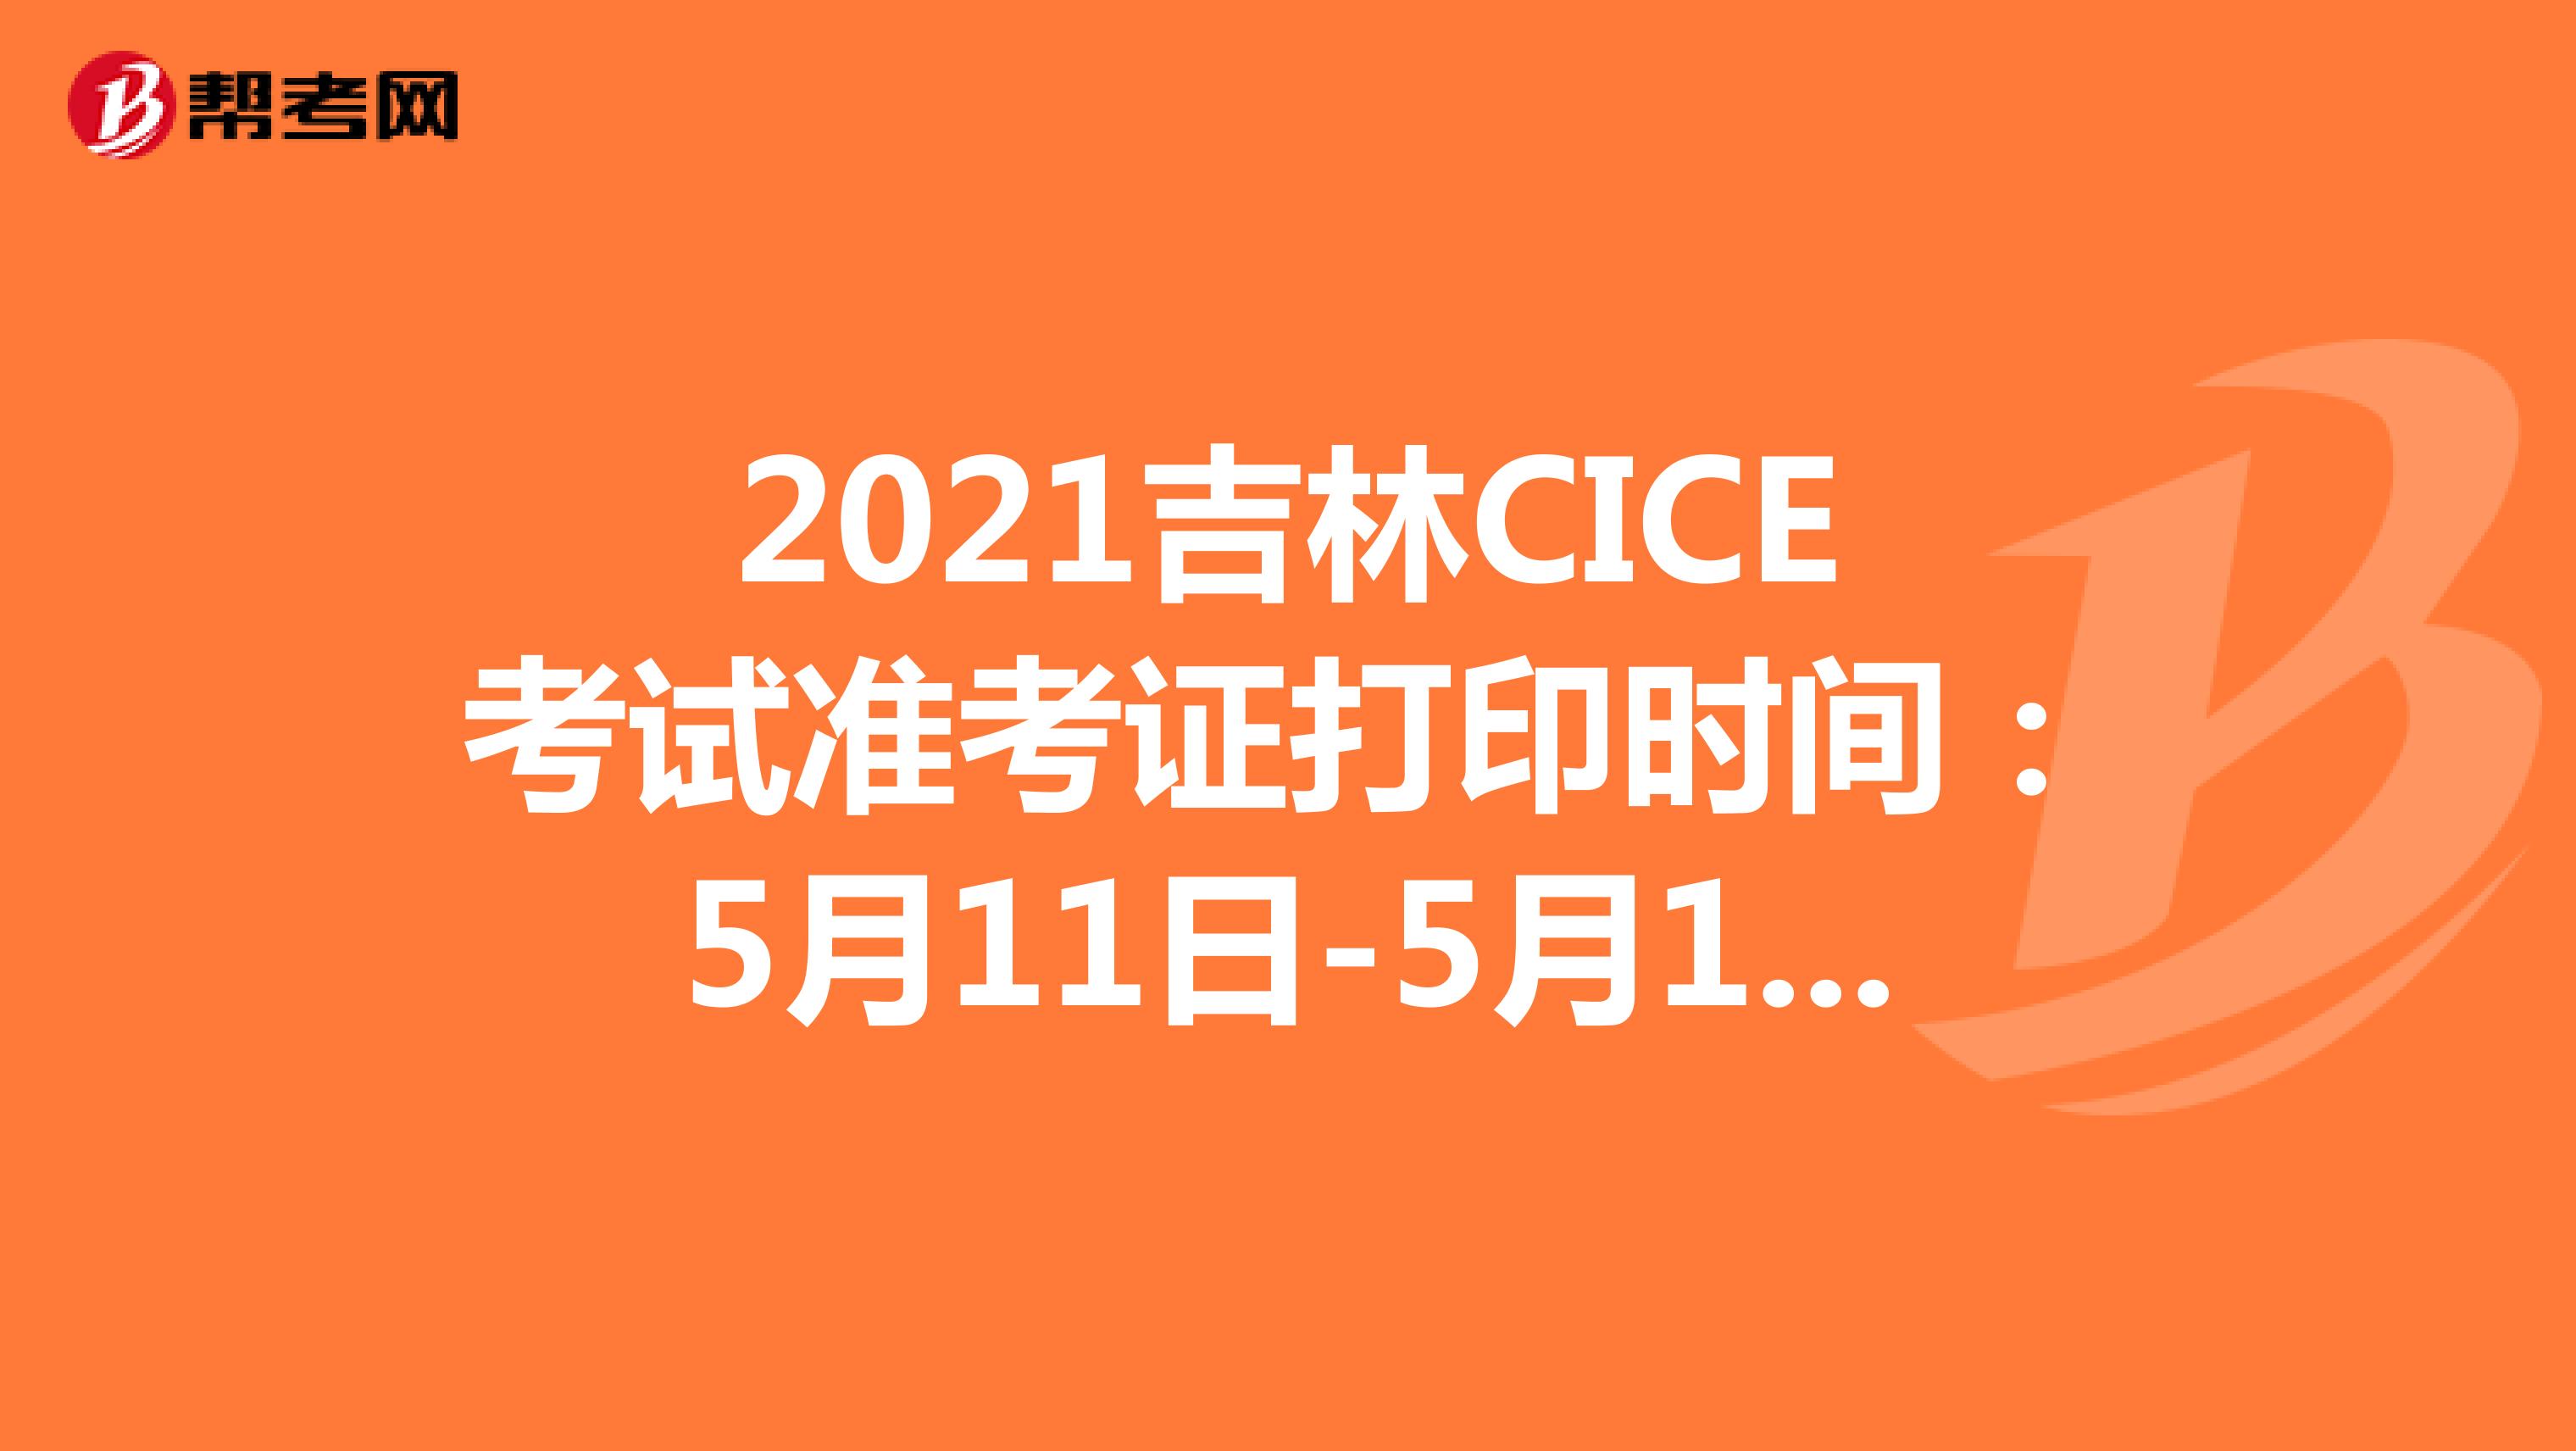 2021吉林CICE考试准考证打印时间：5月11日-5月14日